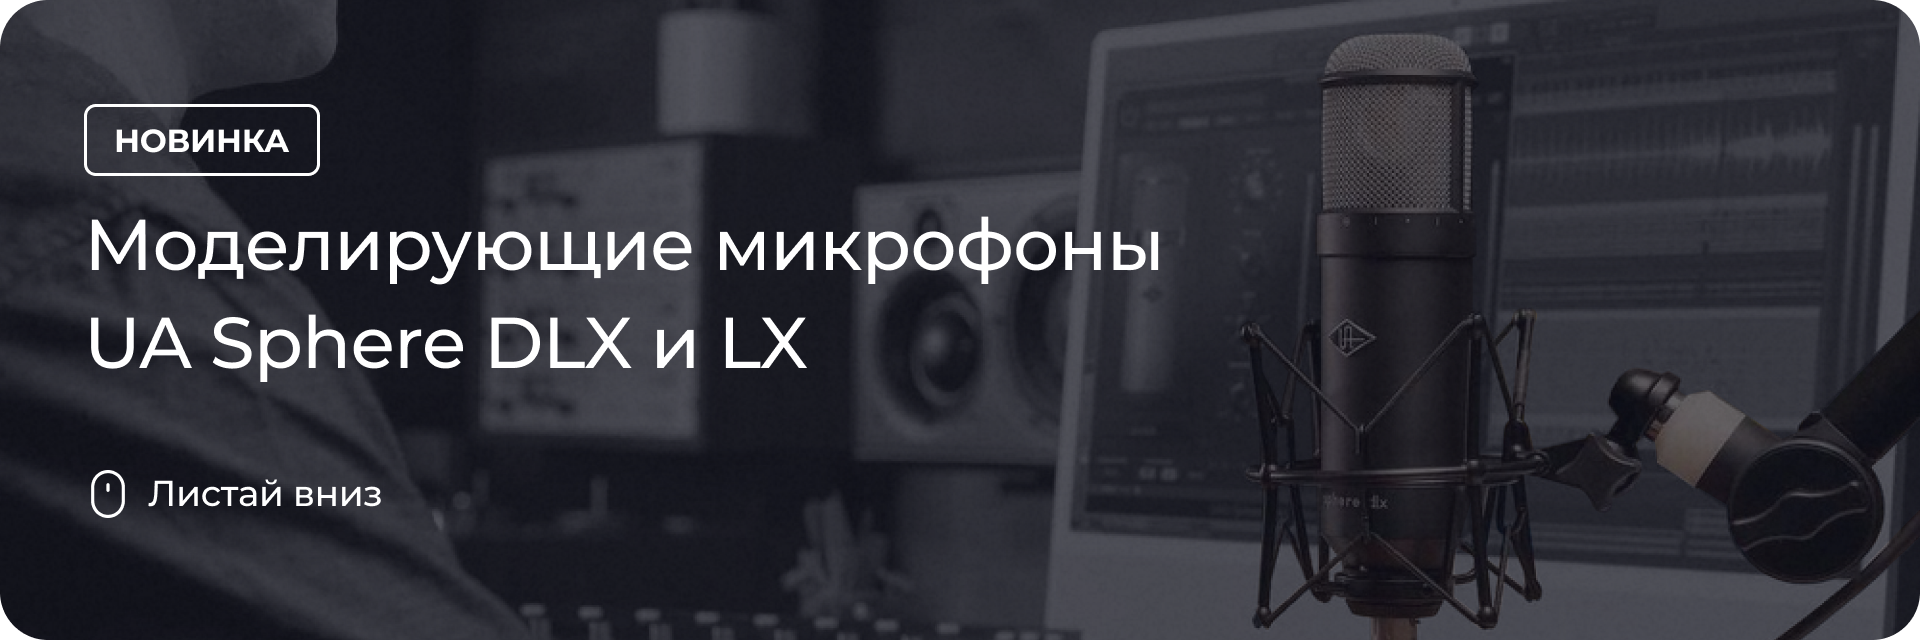 Моделирующие микрофоны UA Sphere DLX и LX